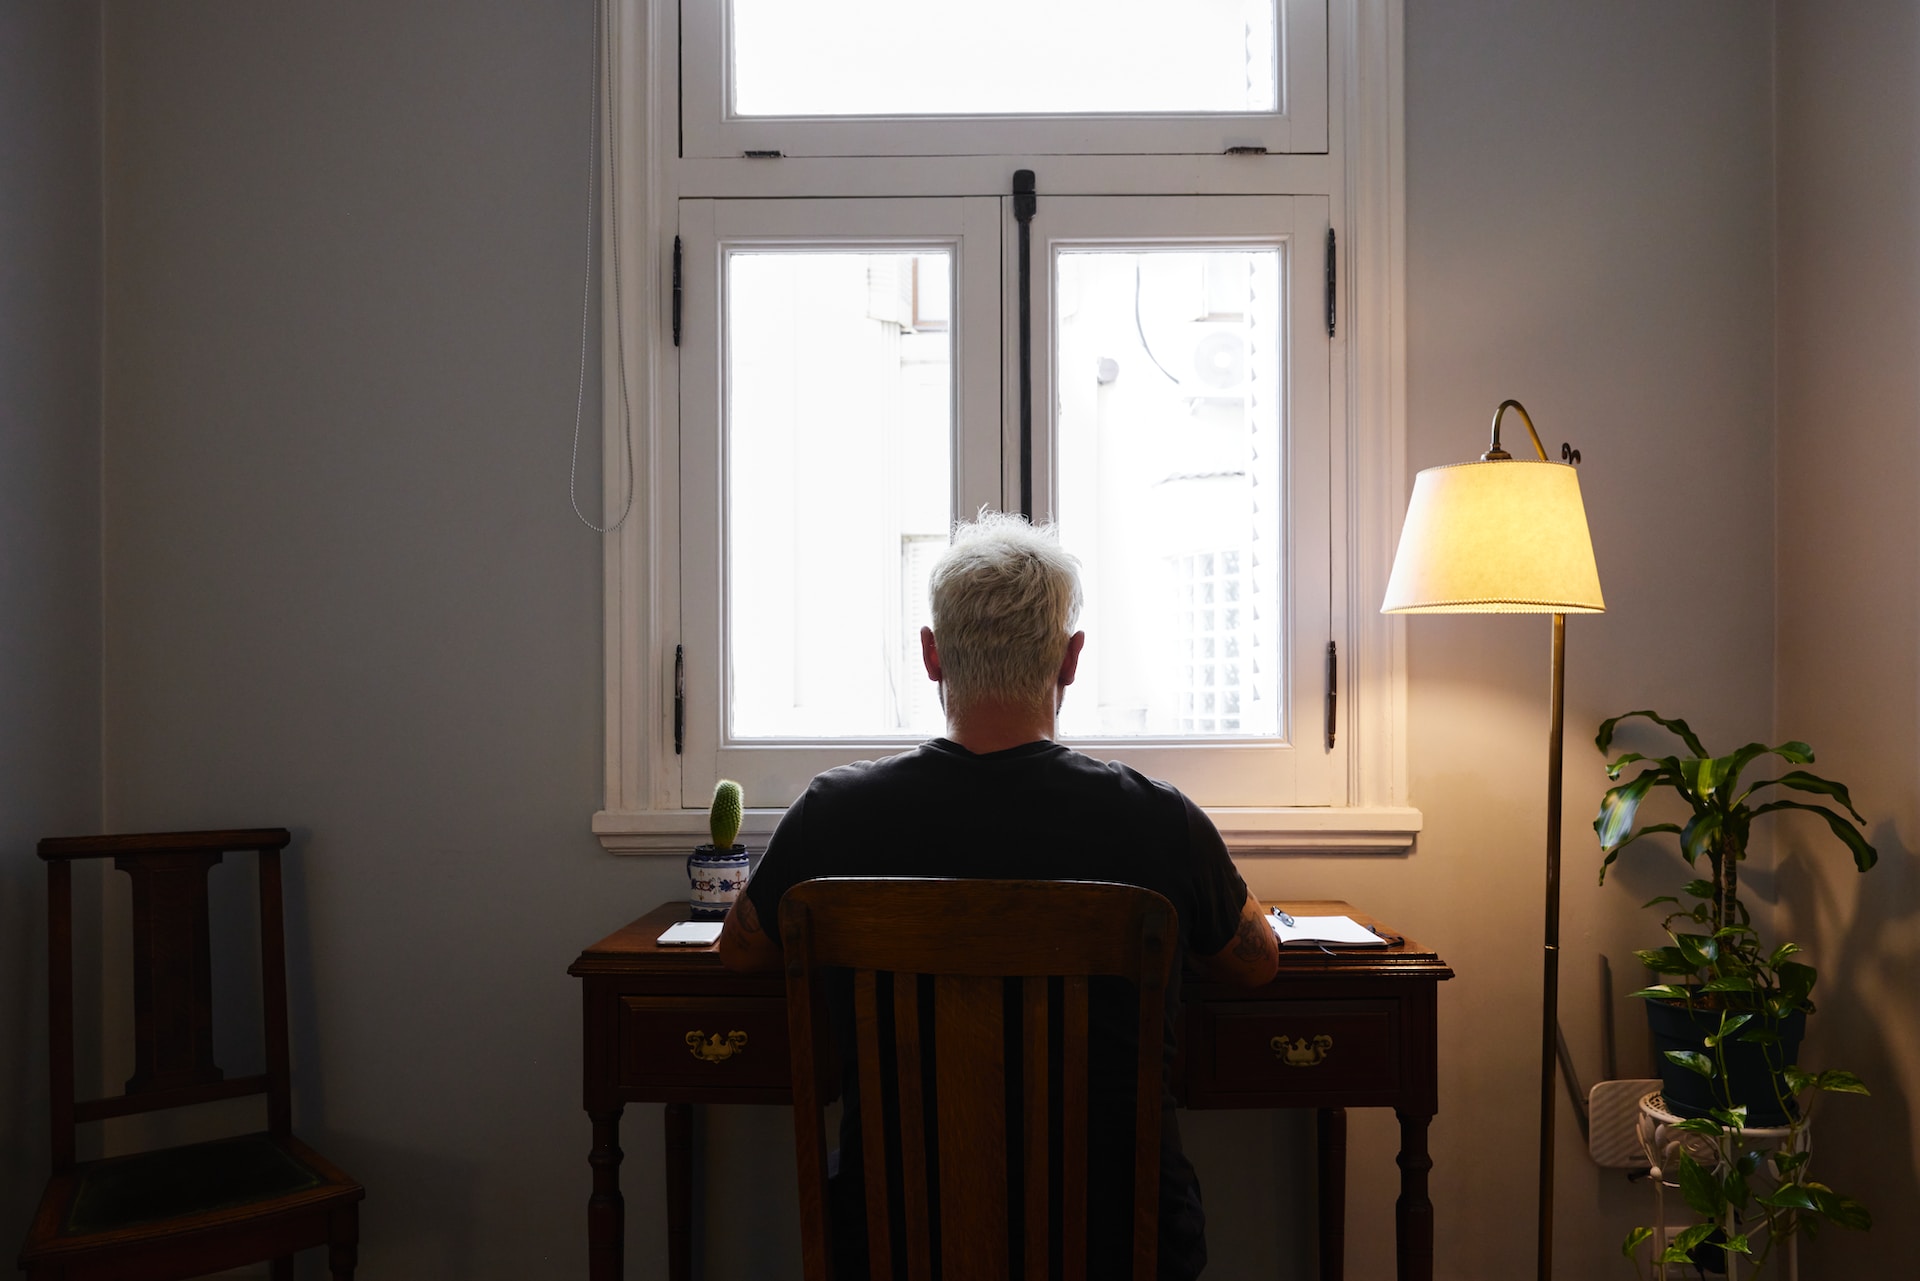 Une personne étudie devant une fenêtre.